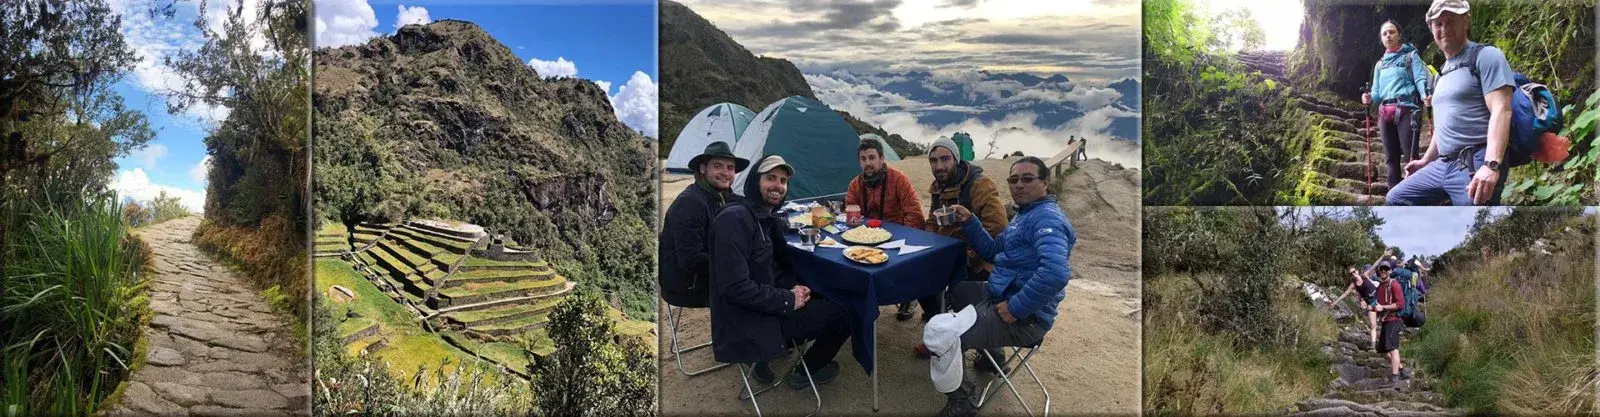 Inca Trail to Machu Picchu 5 Days and 4 Nights - Local Trekkers Peru - Local Trekkers Peru